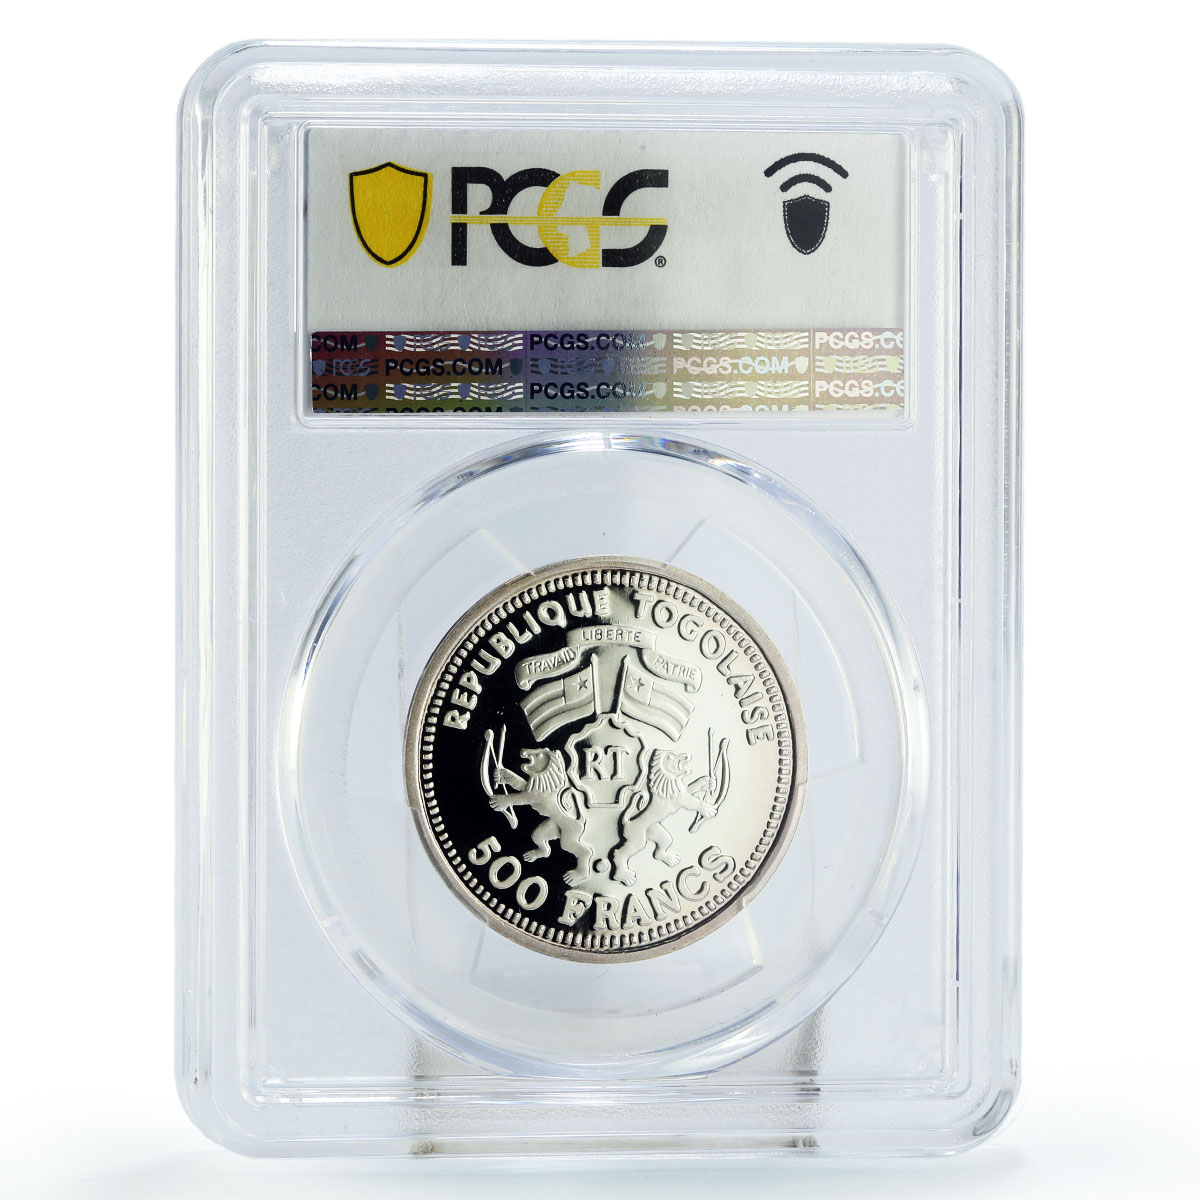 Togo 500 francs Moon Landing Apollo 11 Launch Space PR69 PCGS silver coin 1999